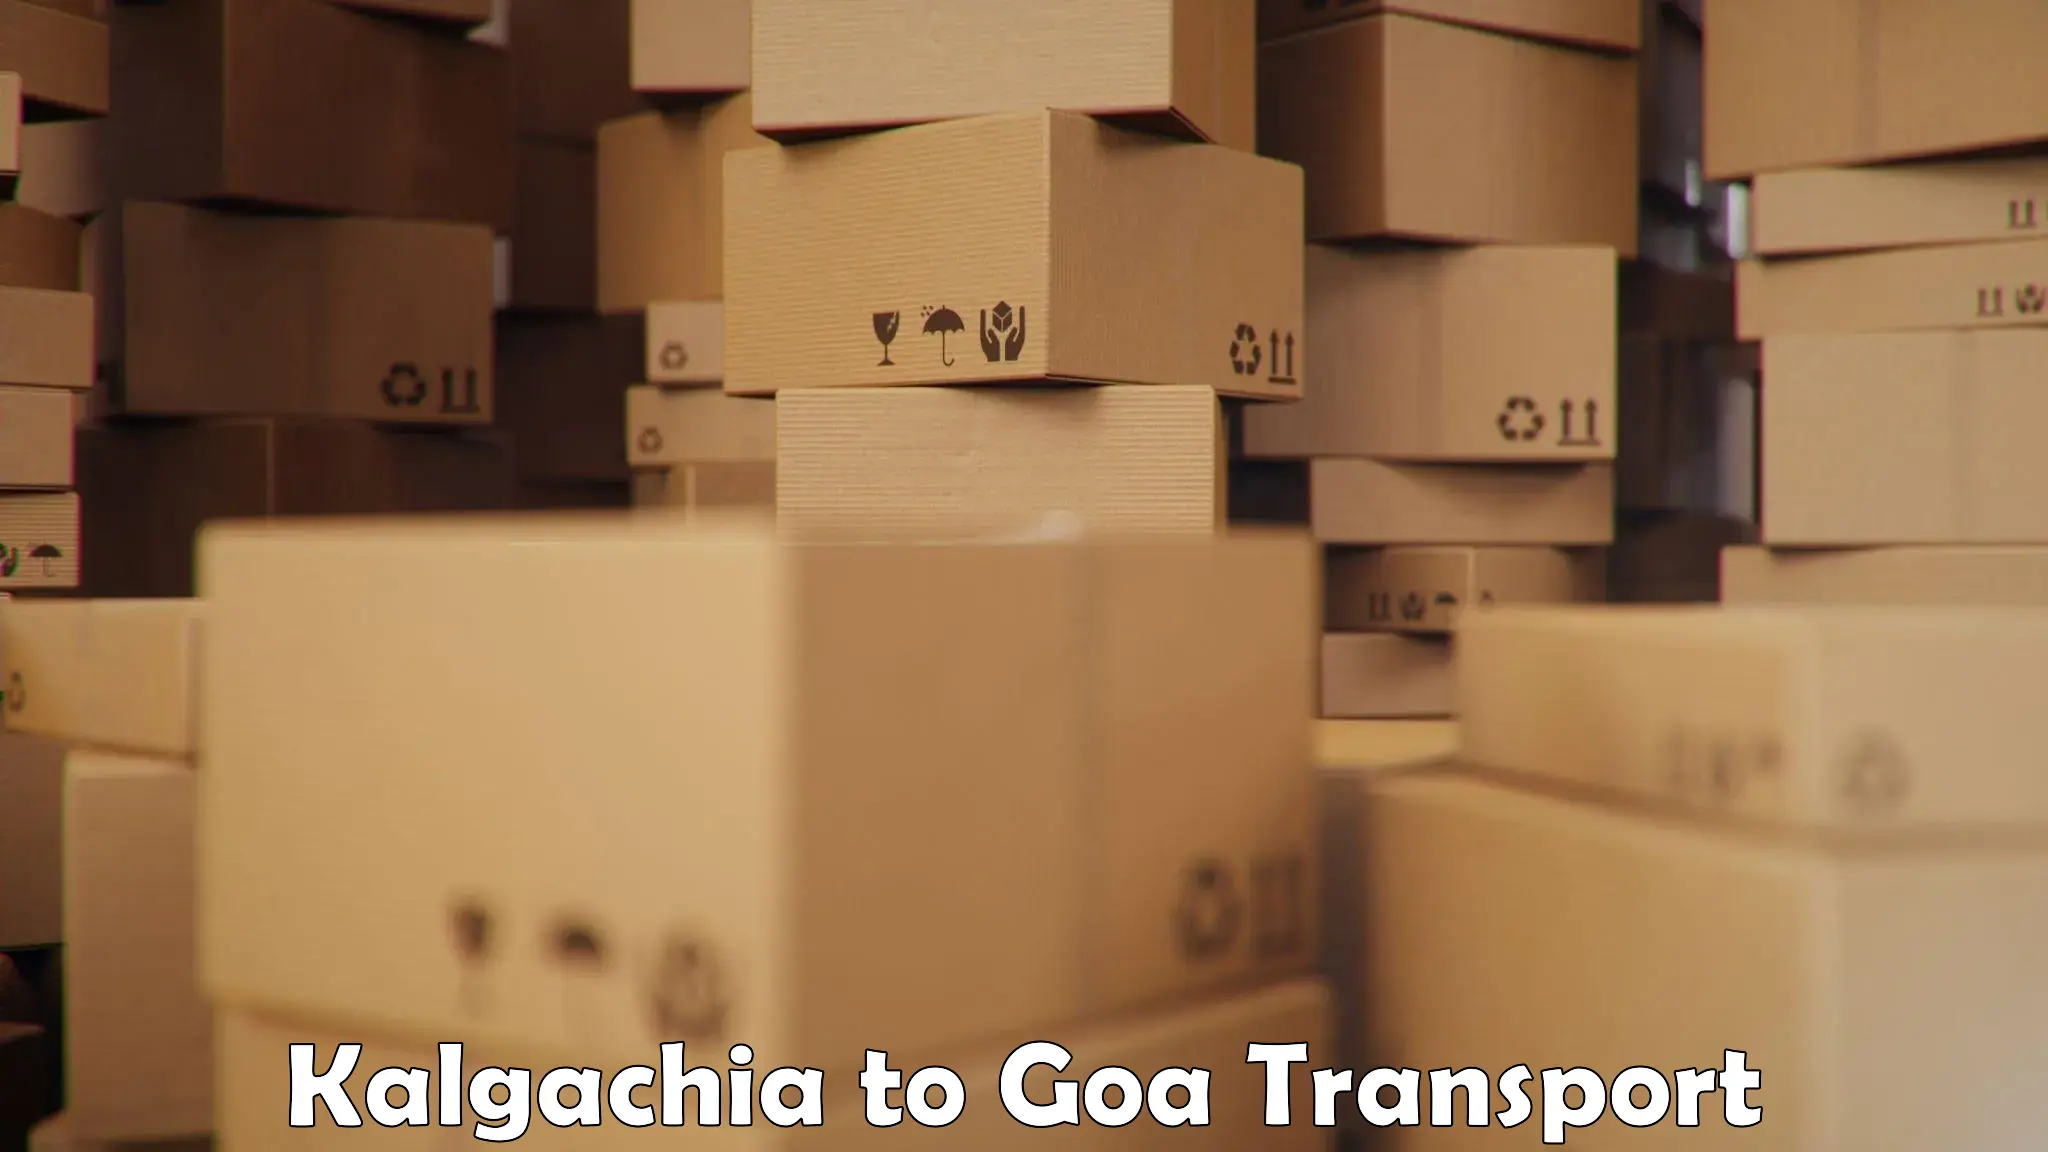 Domestic goods transportation services Kalgachia to IIT Goa